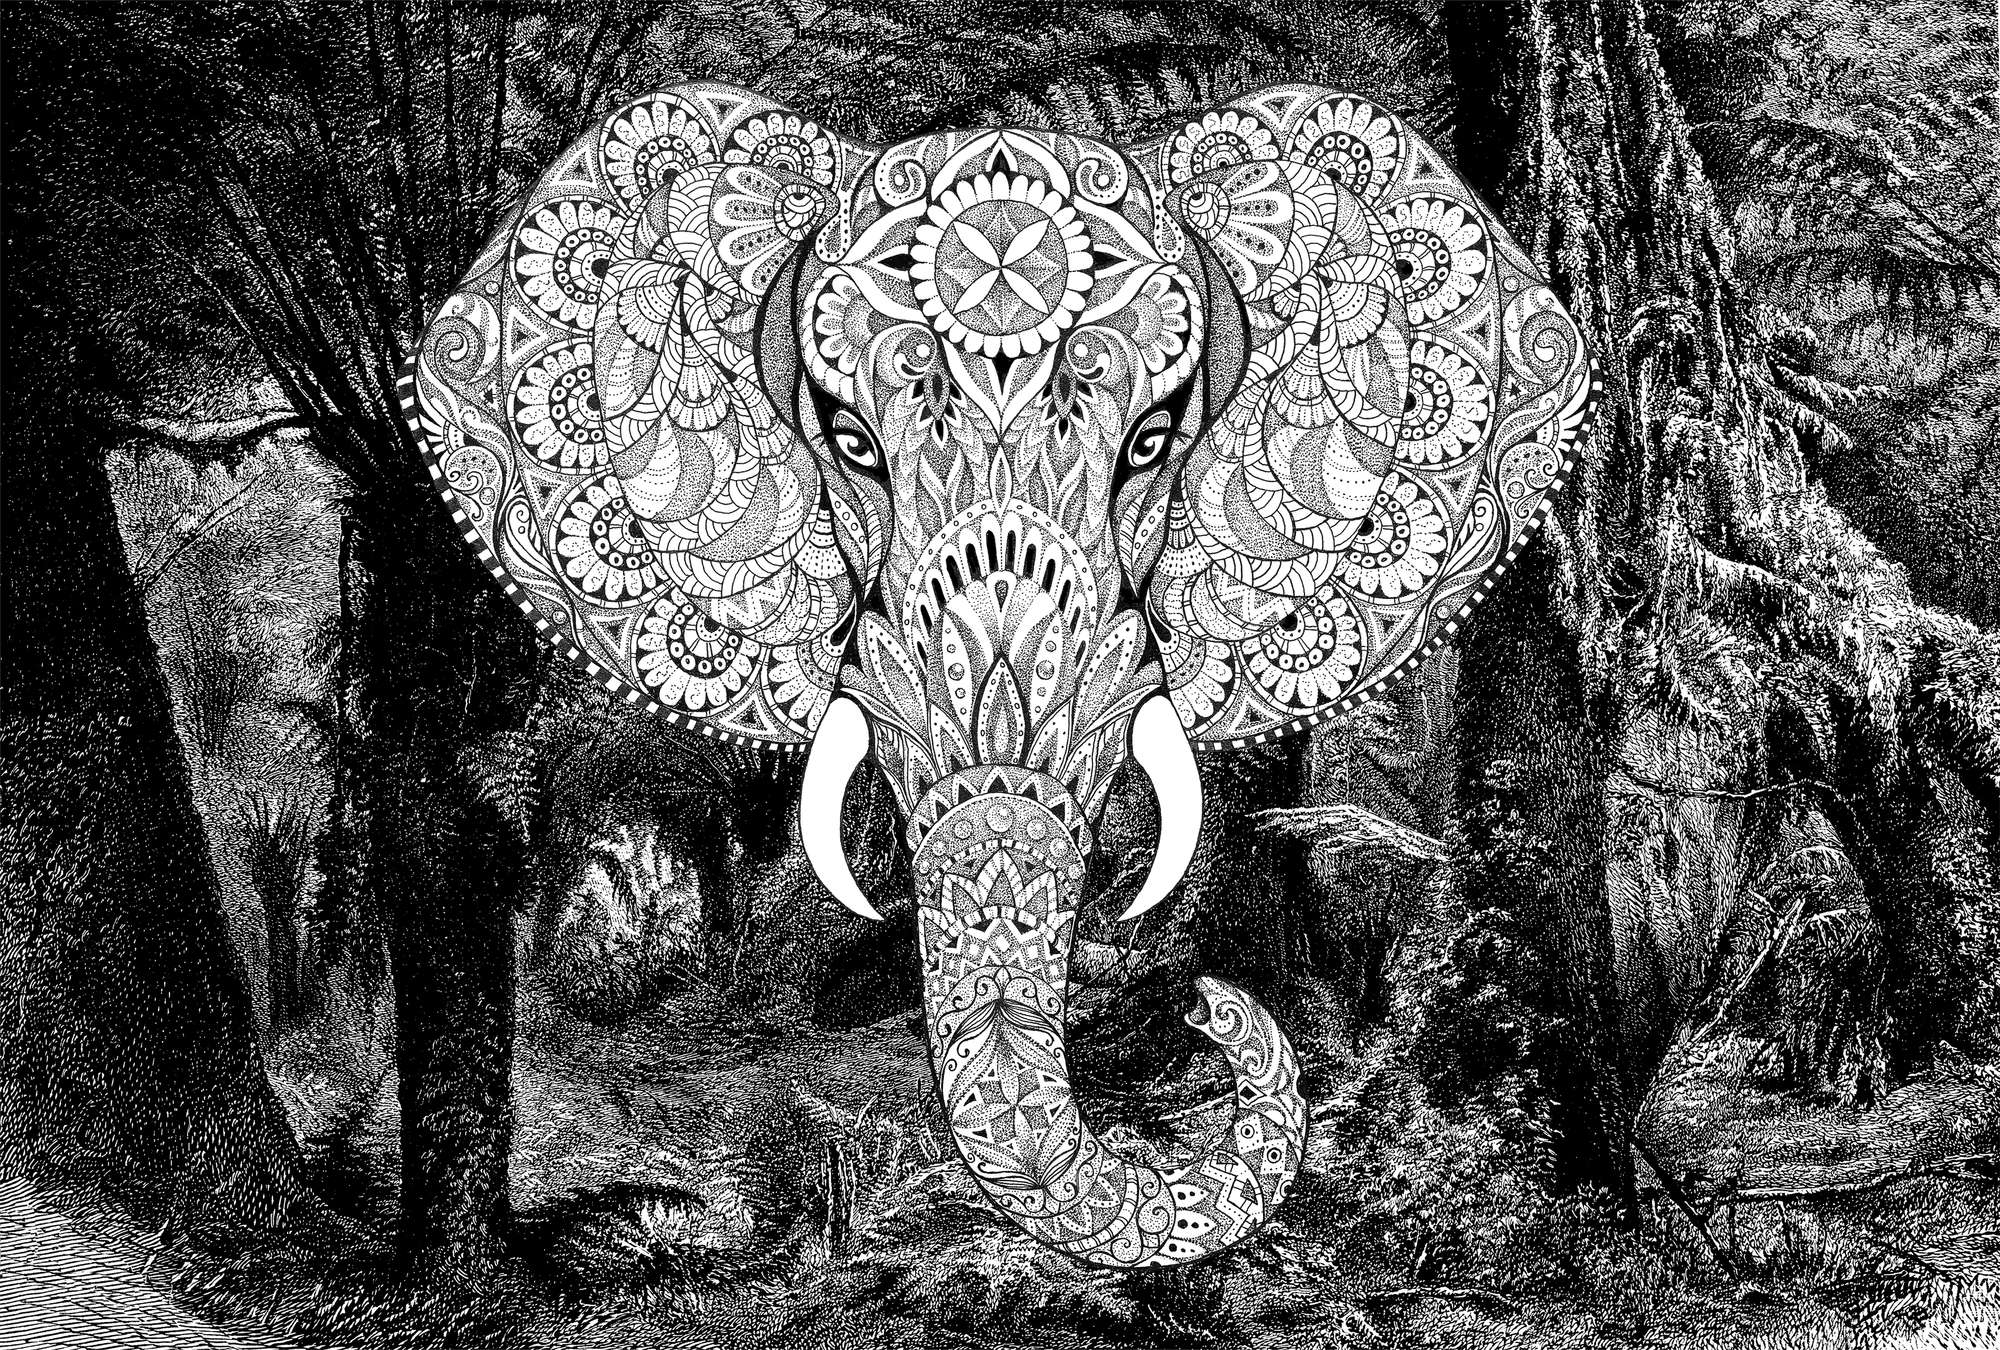             Muurschildering olifant boho stijl met jungle motief - grijs, wit, zwart
        